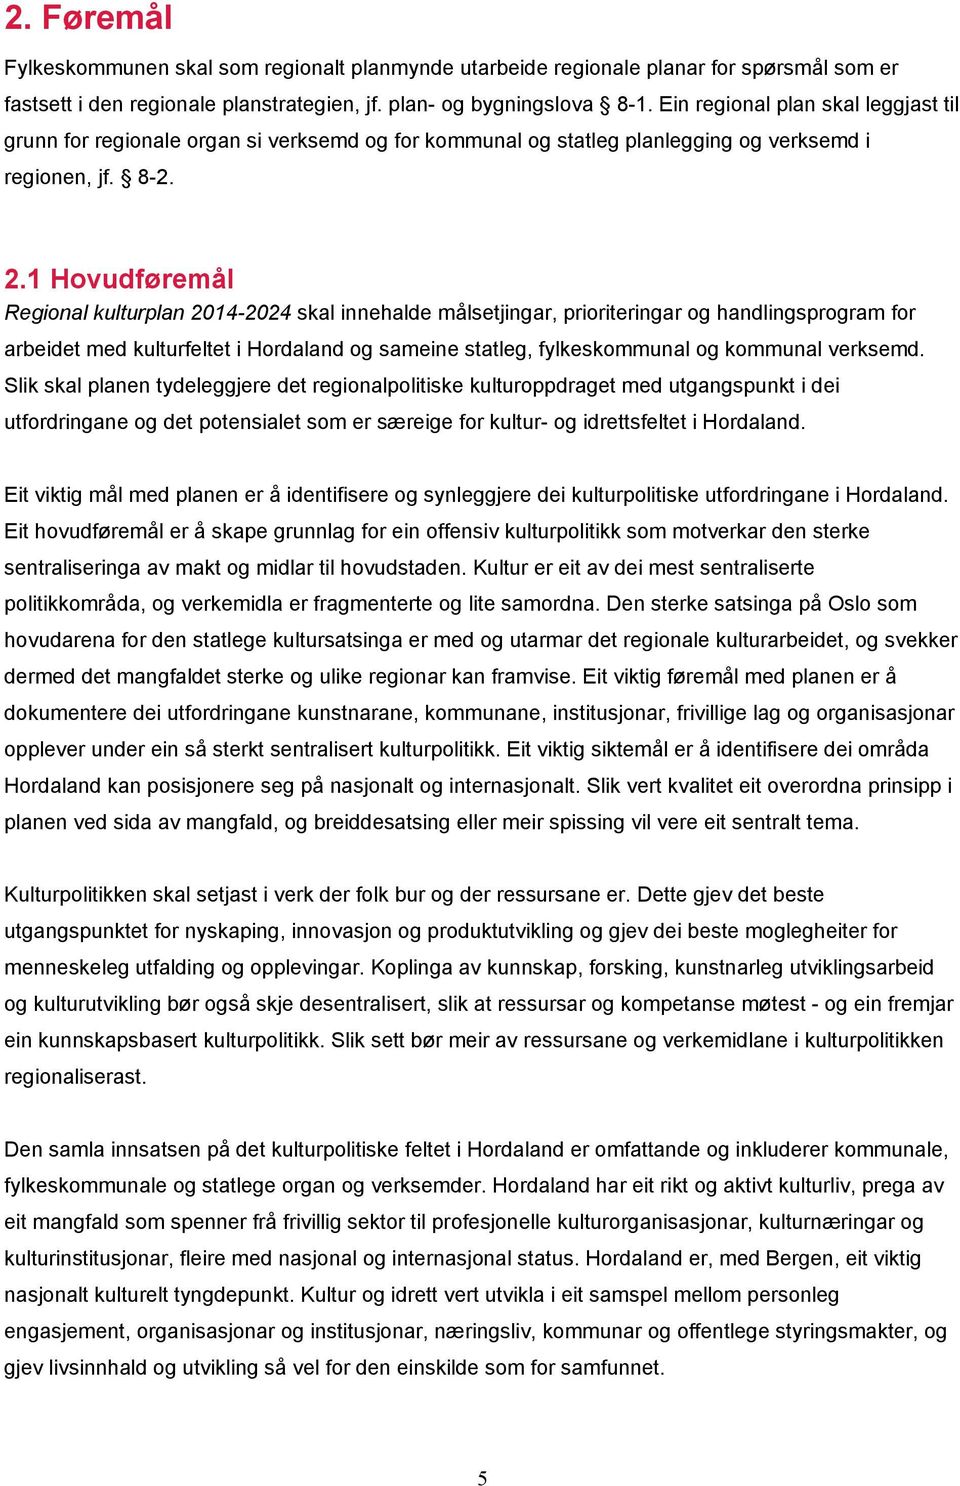 1 Hovudføremål Regional kulturplan 2014-2024 skal innehalde målsetjingar, prioriteringar og handlingsprogram for arbeidet med kulturfeltet i Hordaland og sameine statleg, fylkeskommunal og kommunal